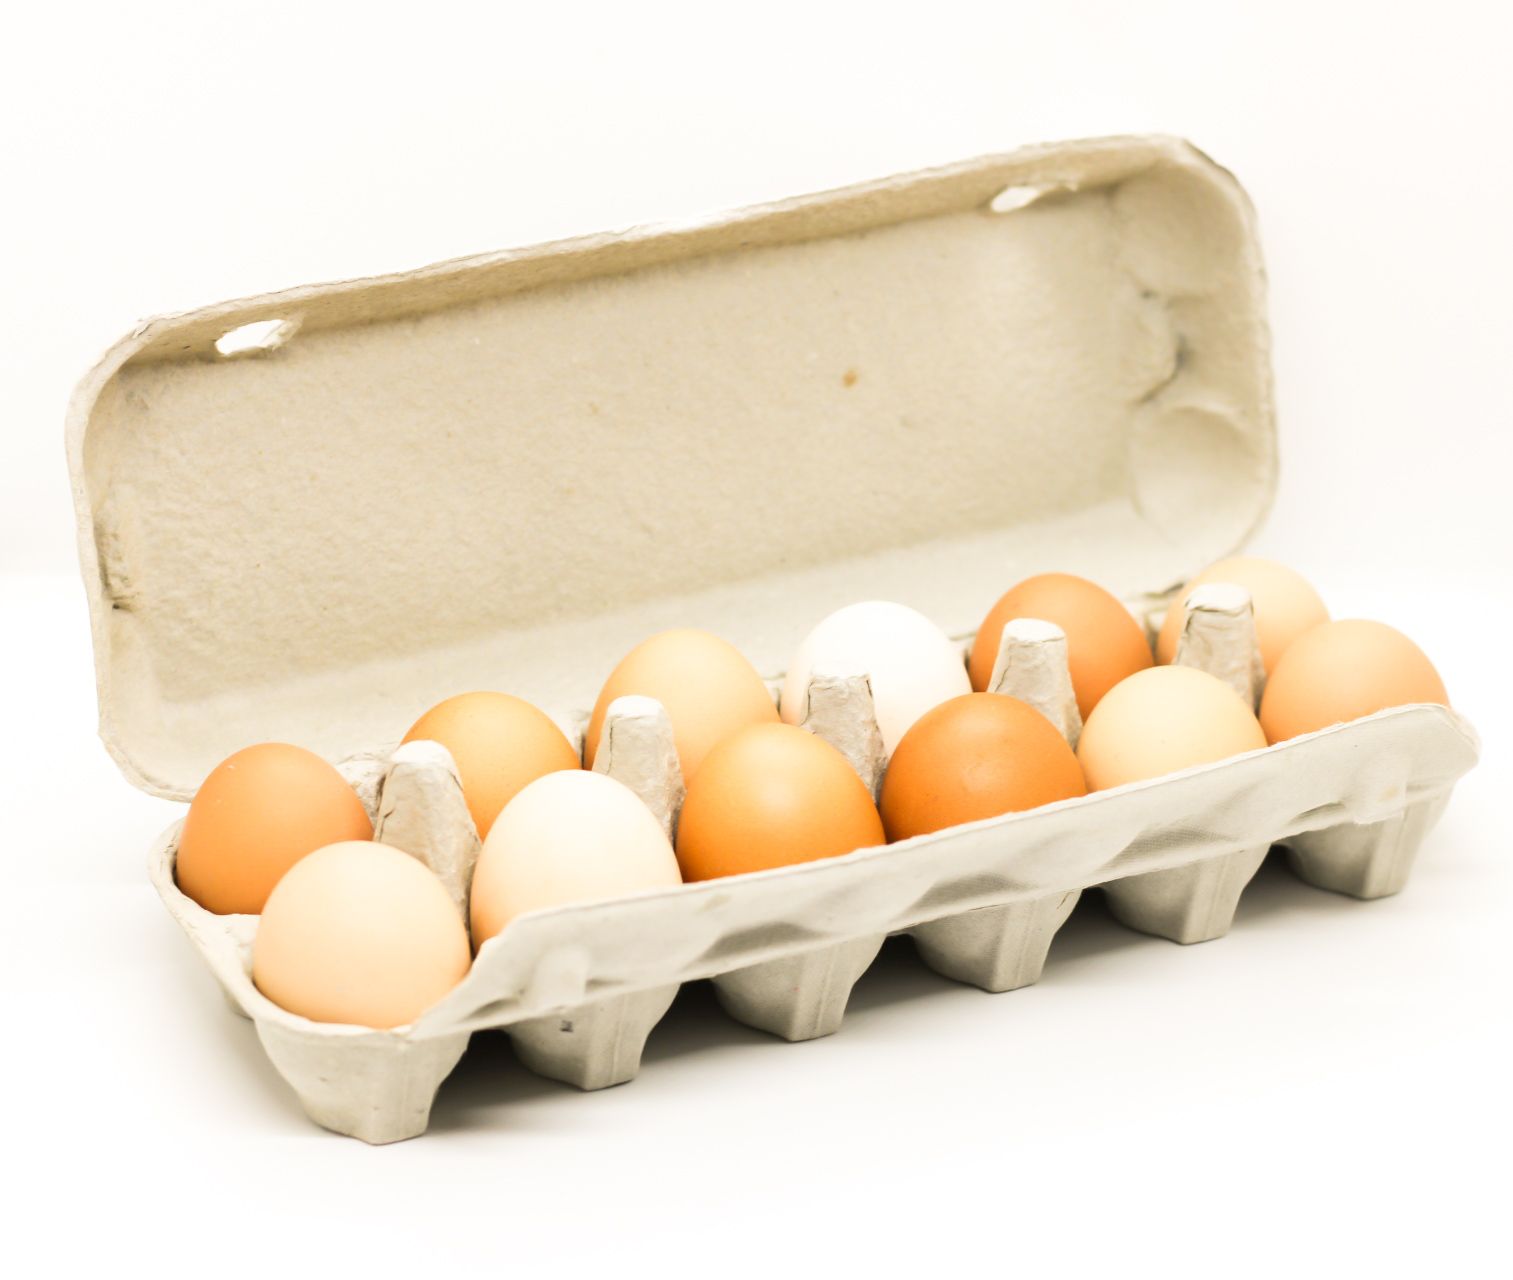 Farm Fresh Free Range Eggs 600-700g per dozen